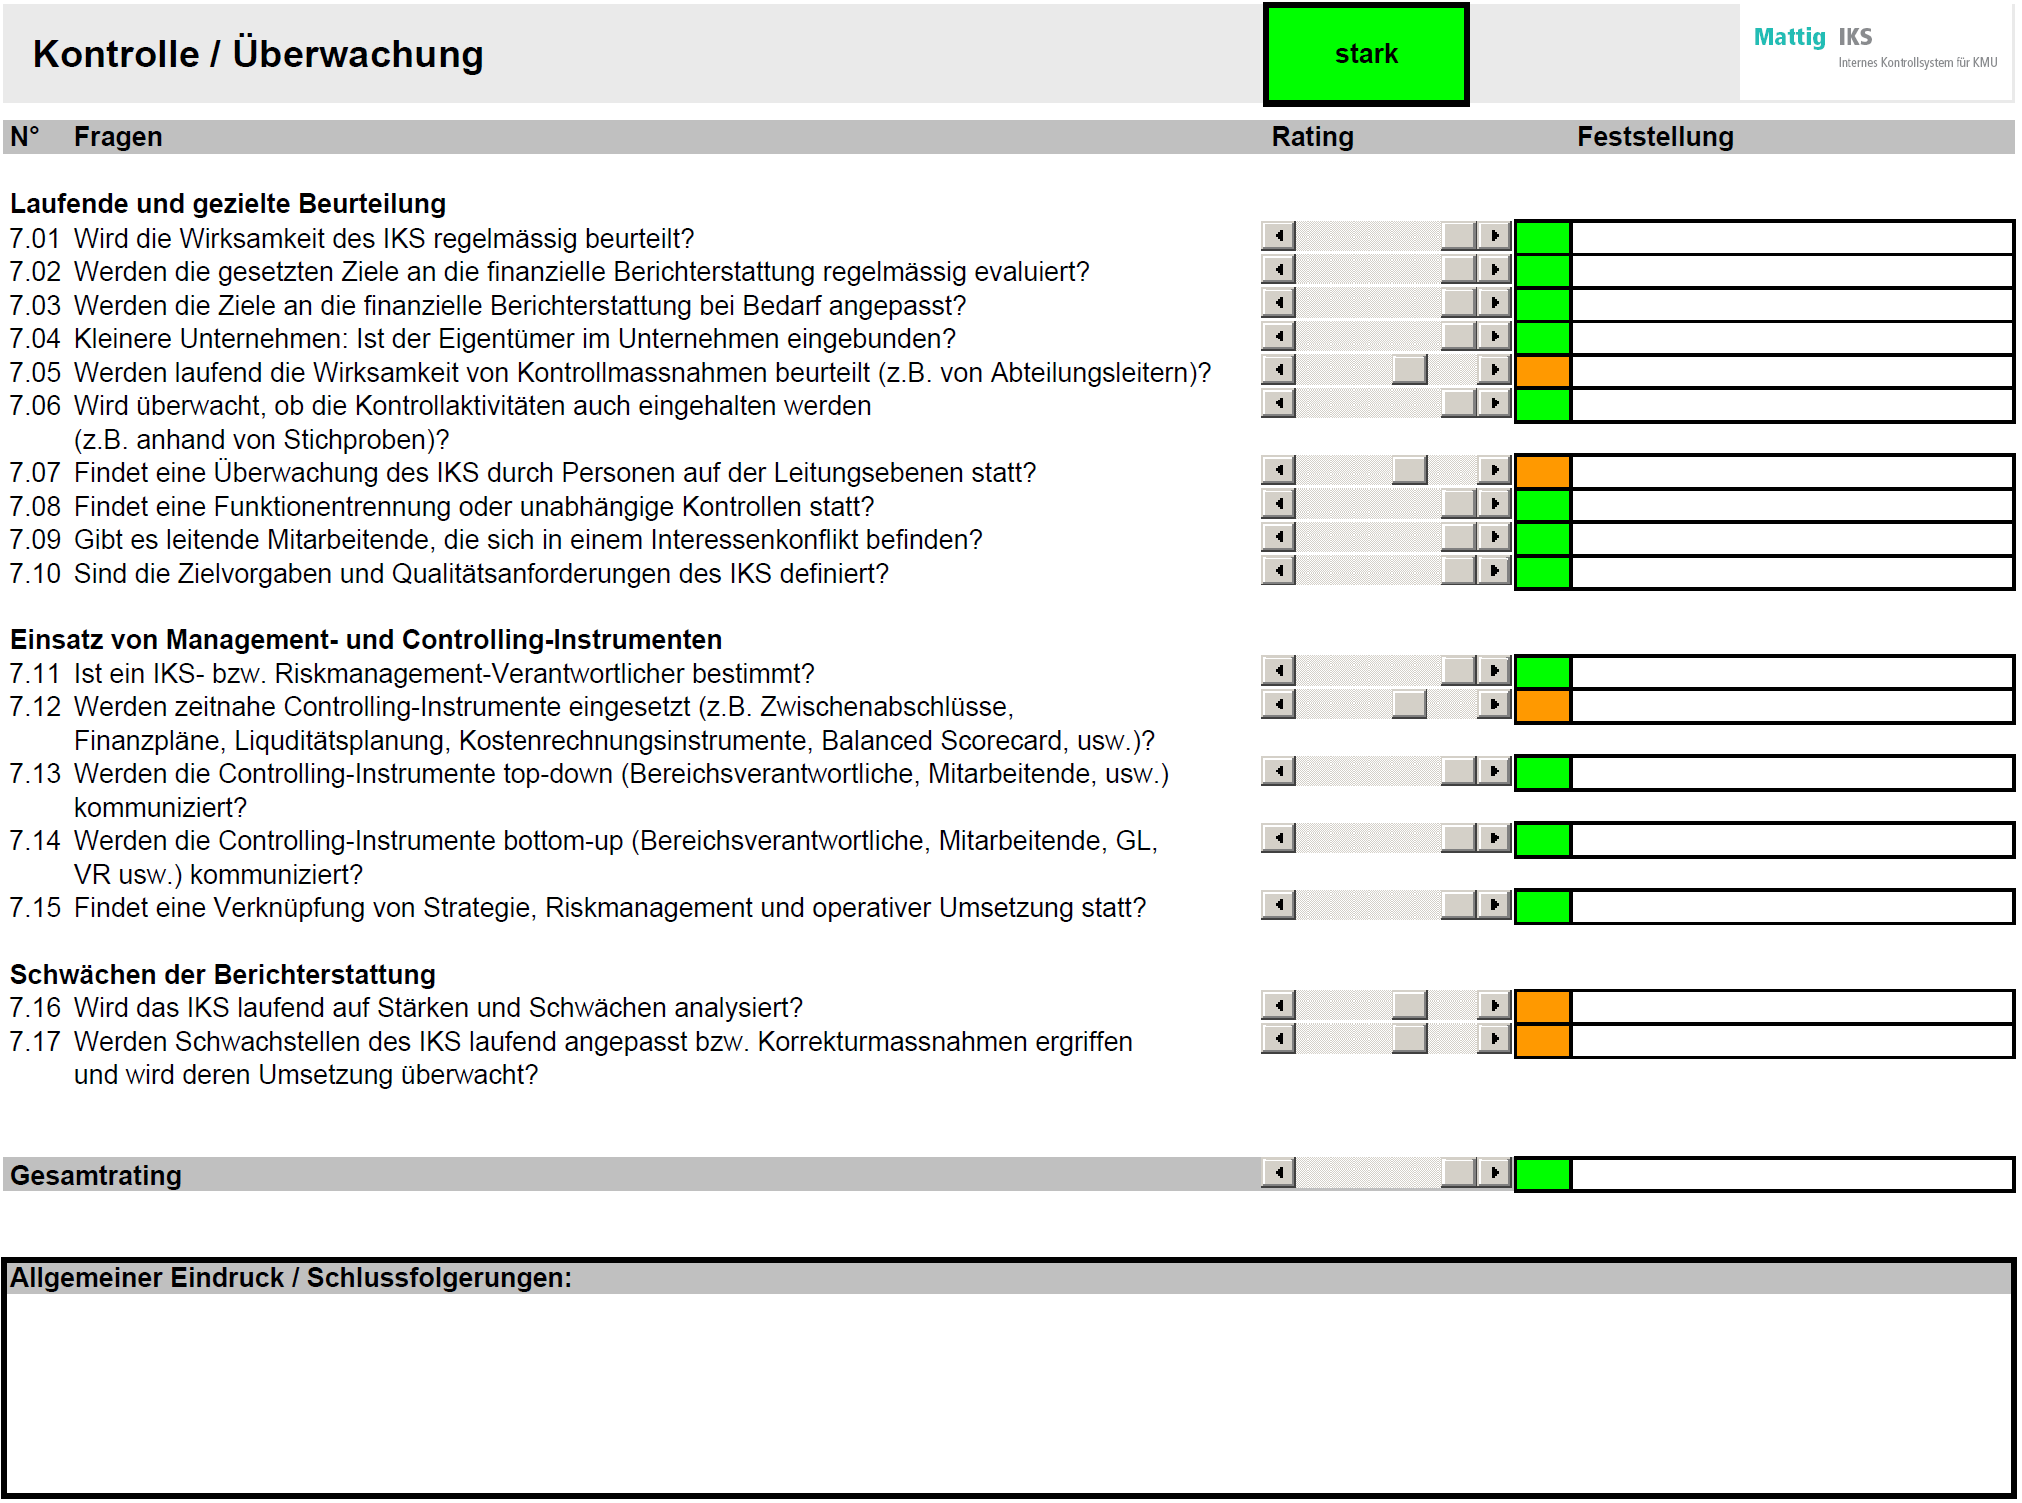 Abbildung 2 Self-Audit Kontrolle / Überwachung Nachfolgend werden die einzelnen Elemente von Mattig IKS erläutert und mit Darstellungen aus dem Tool veranschaulicht.